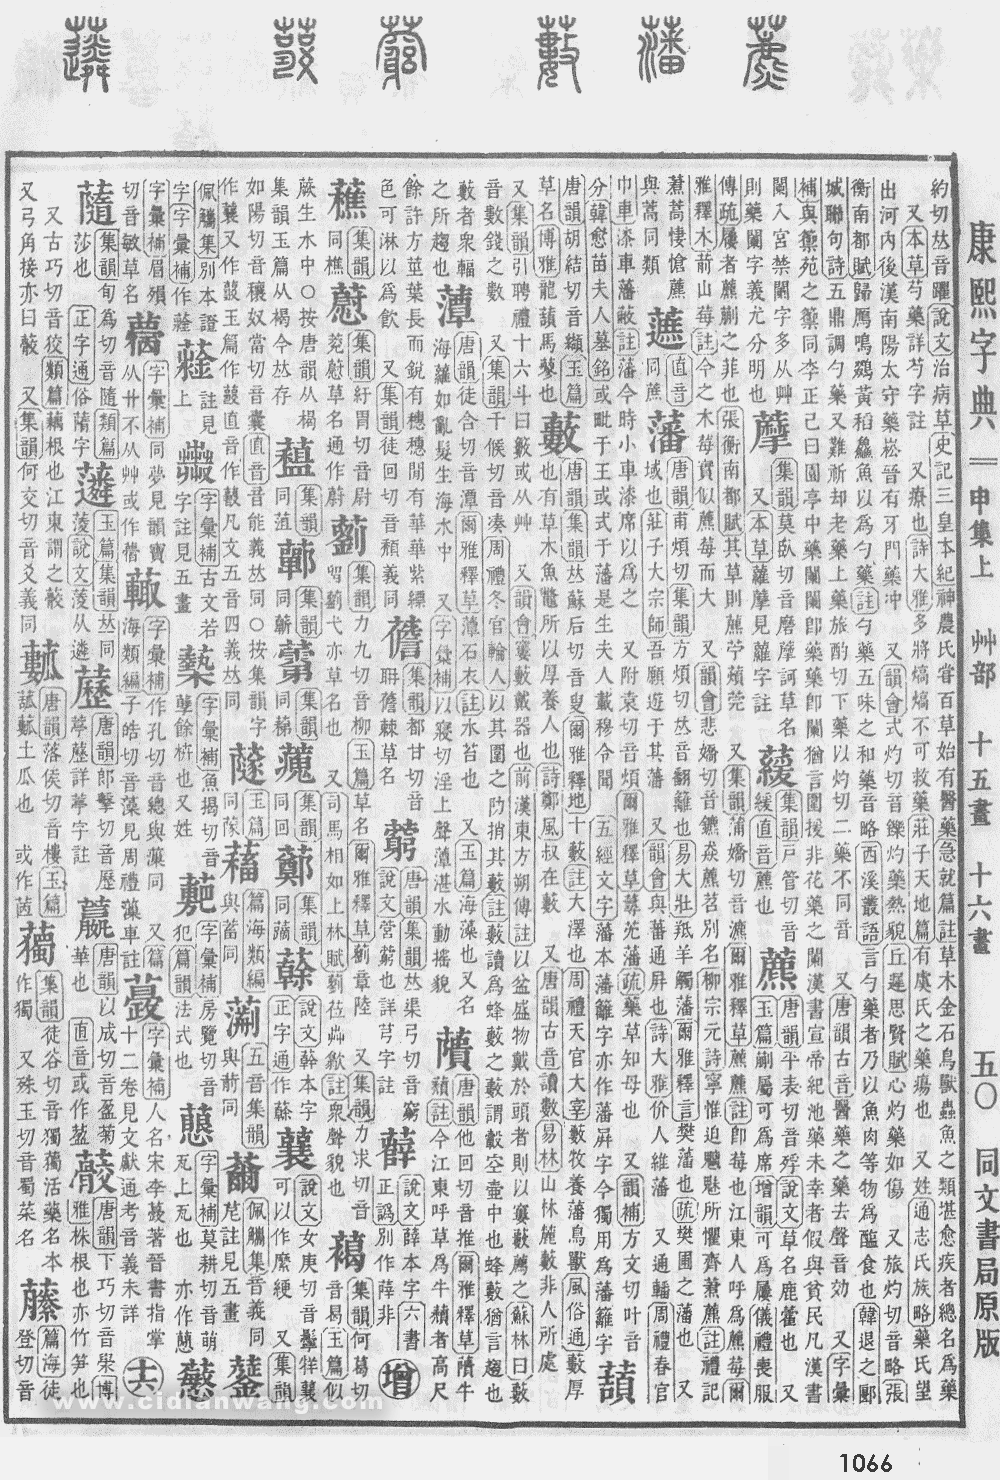 康熙字典掃描版第1066頁